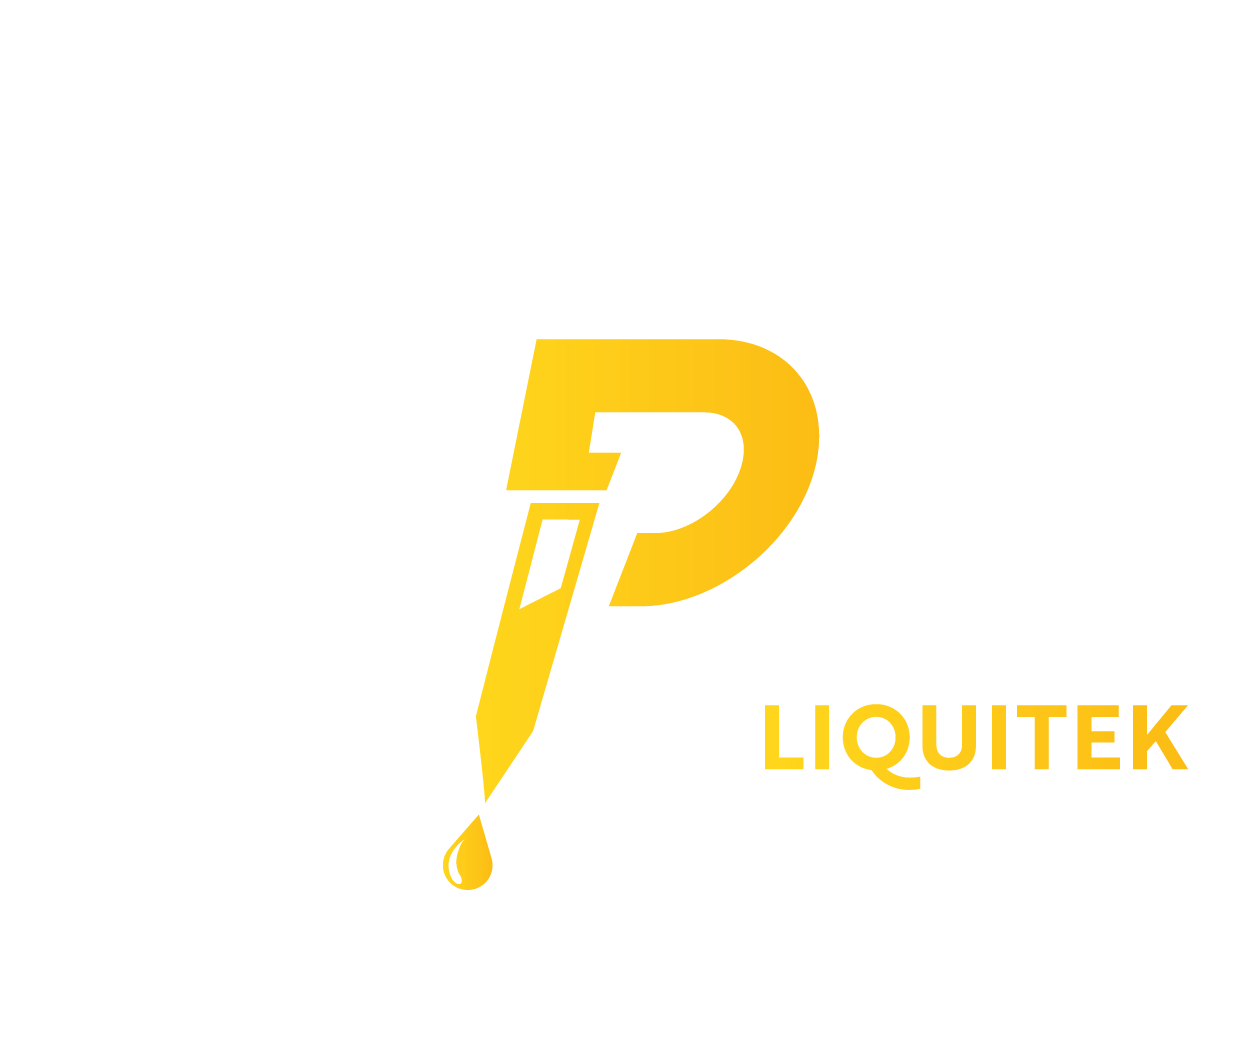 EPM_liquitek_white